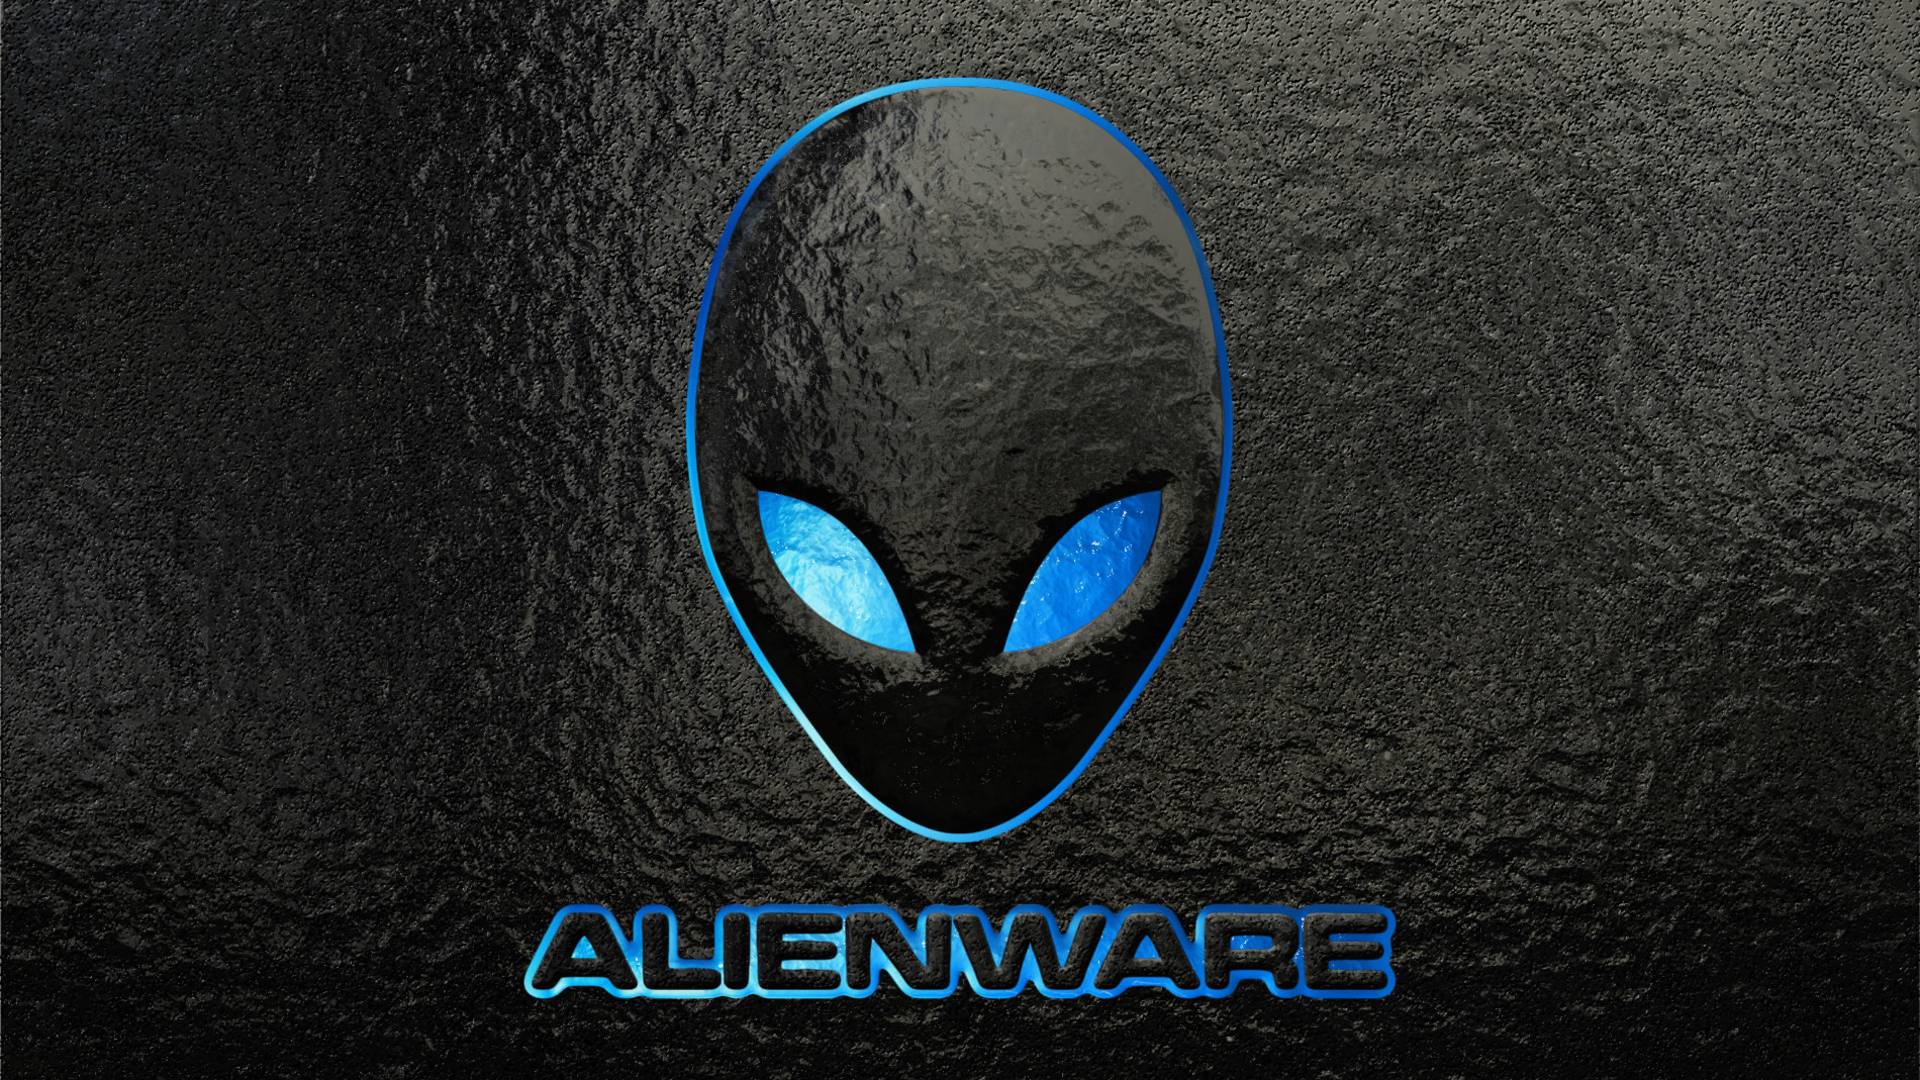 1578715 - Alienware Wallpaper Hd , HD Wallpaper & Backgrounds